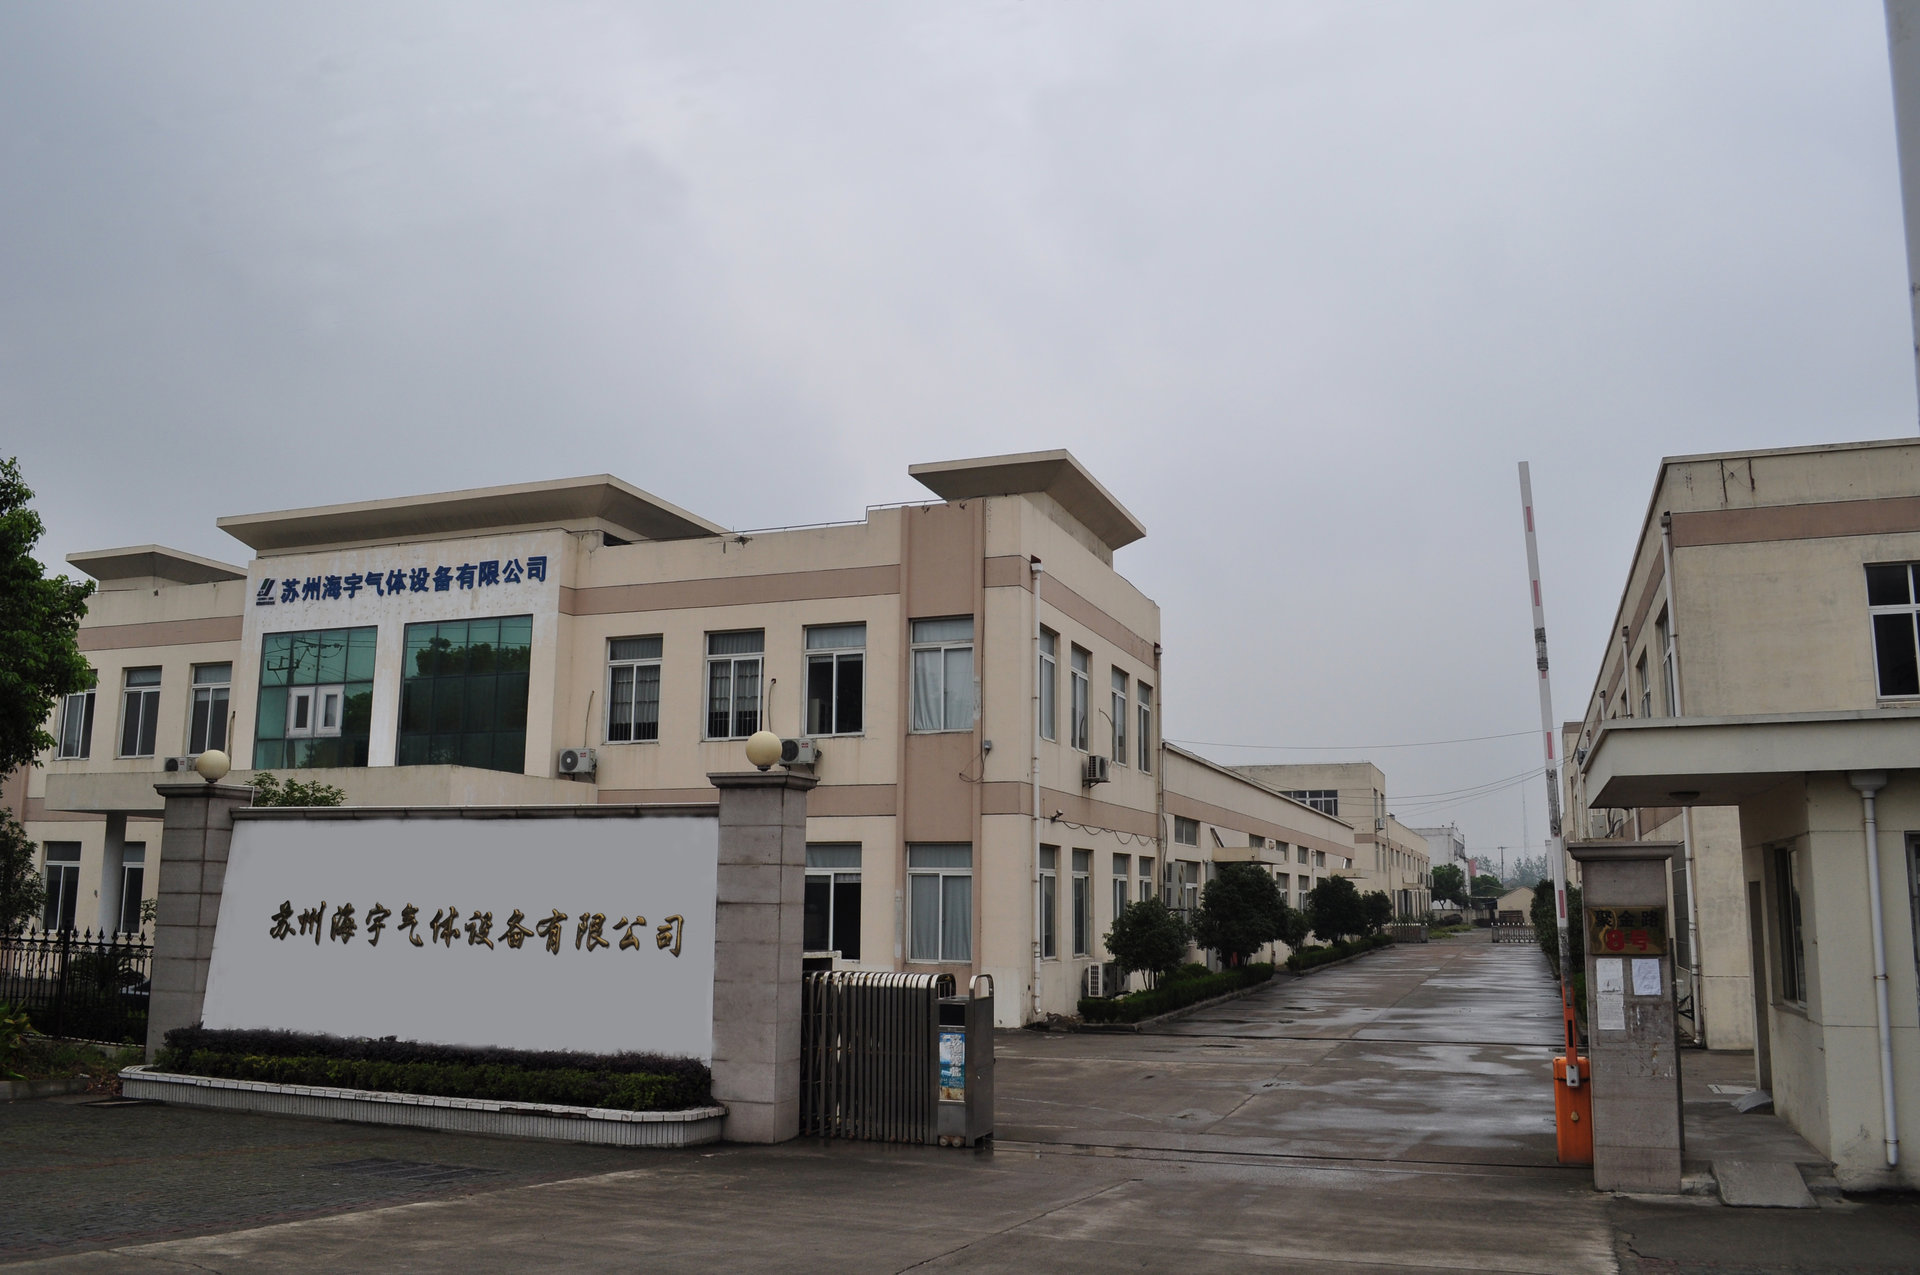 蘇州海宇氣體設備有限公司